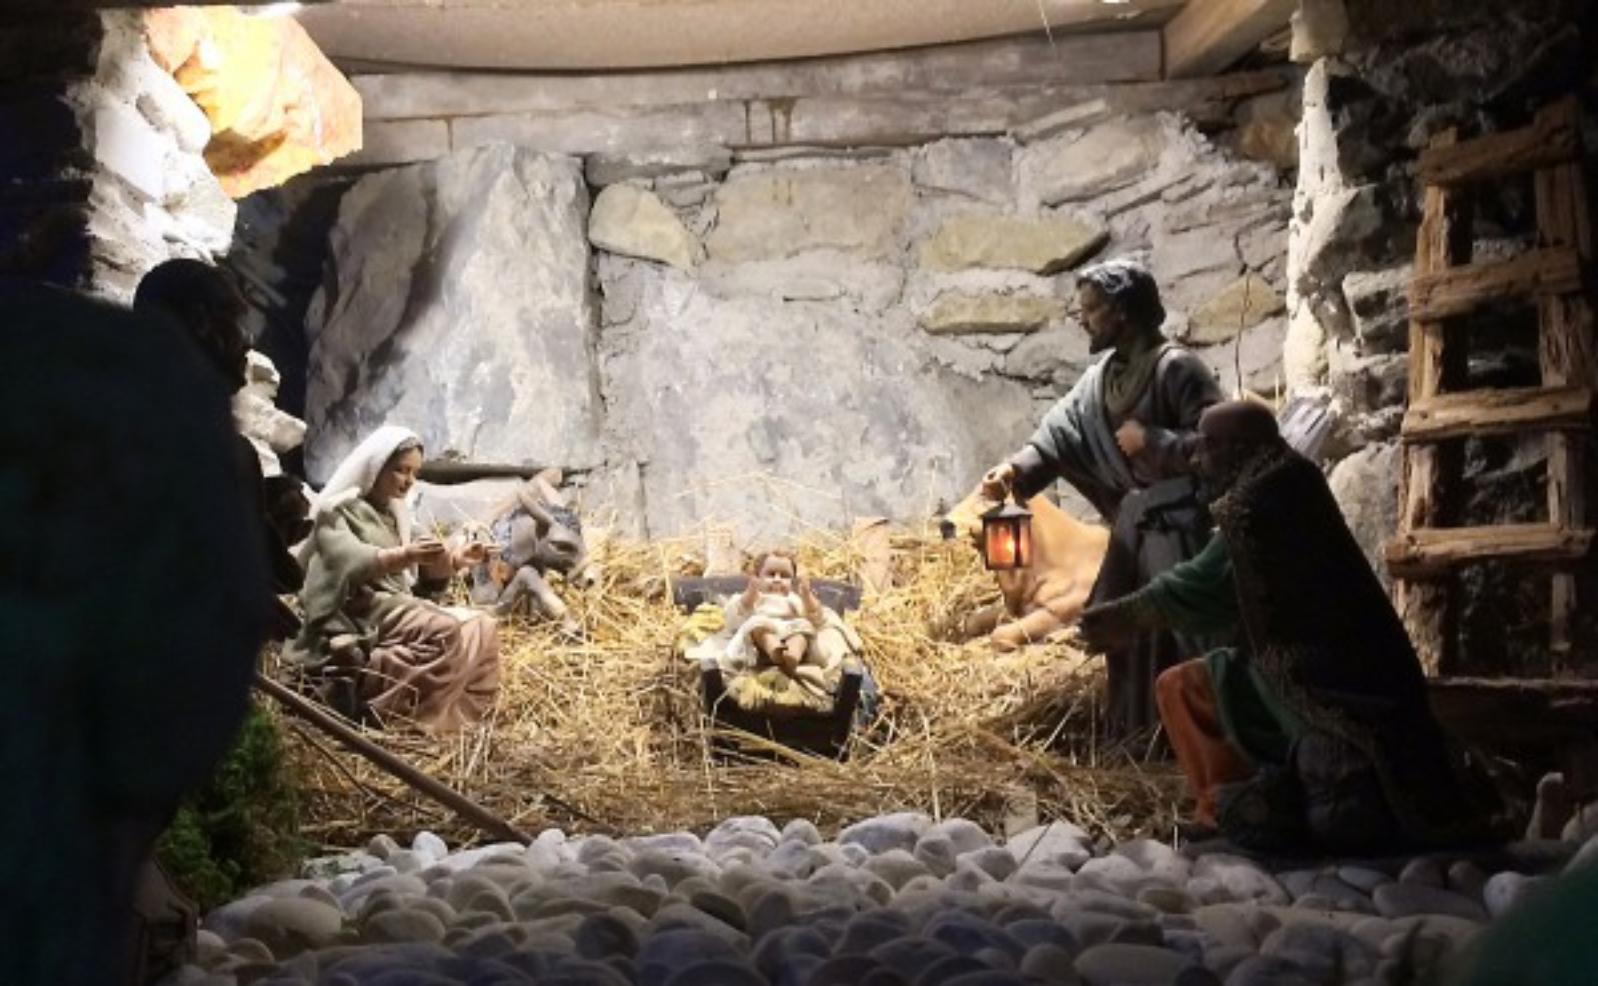 The Nativity Scene in Porretta Terme